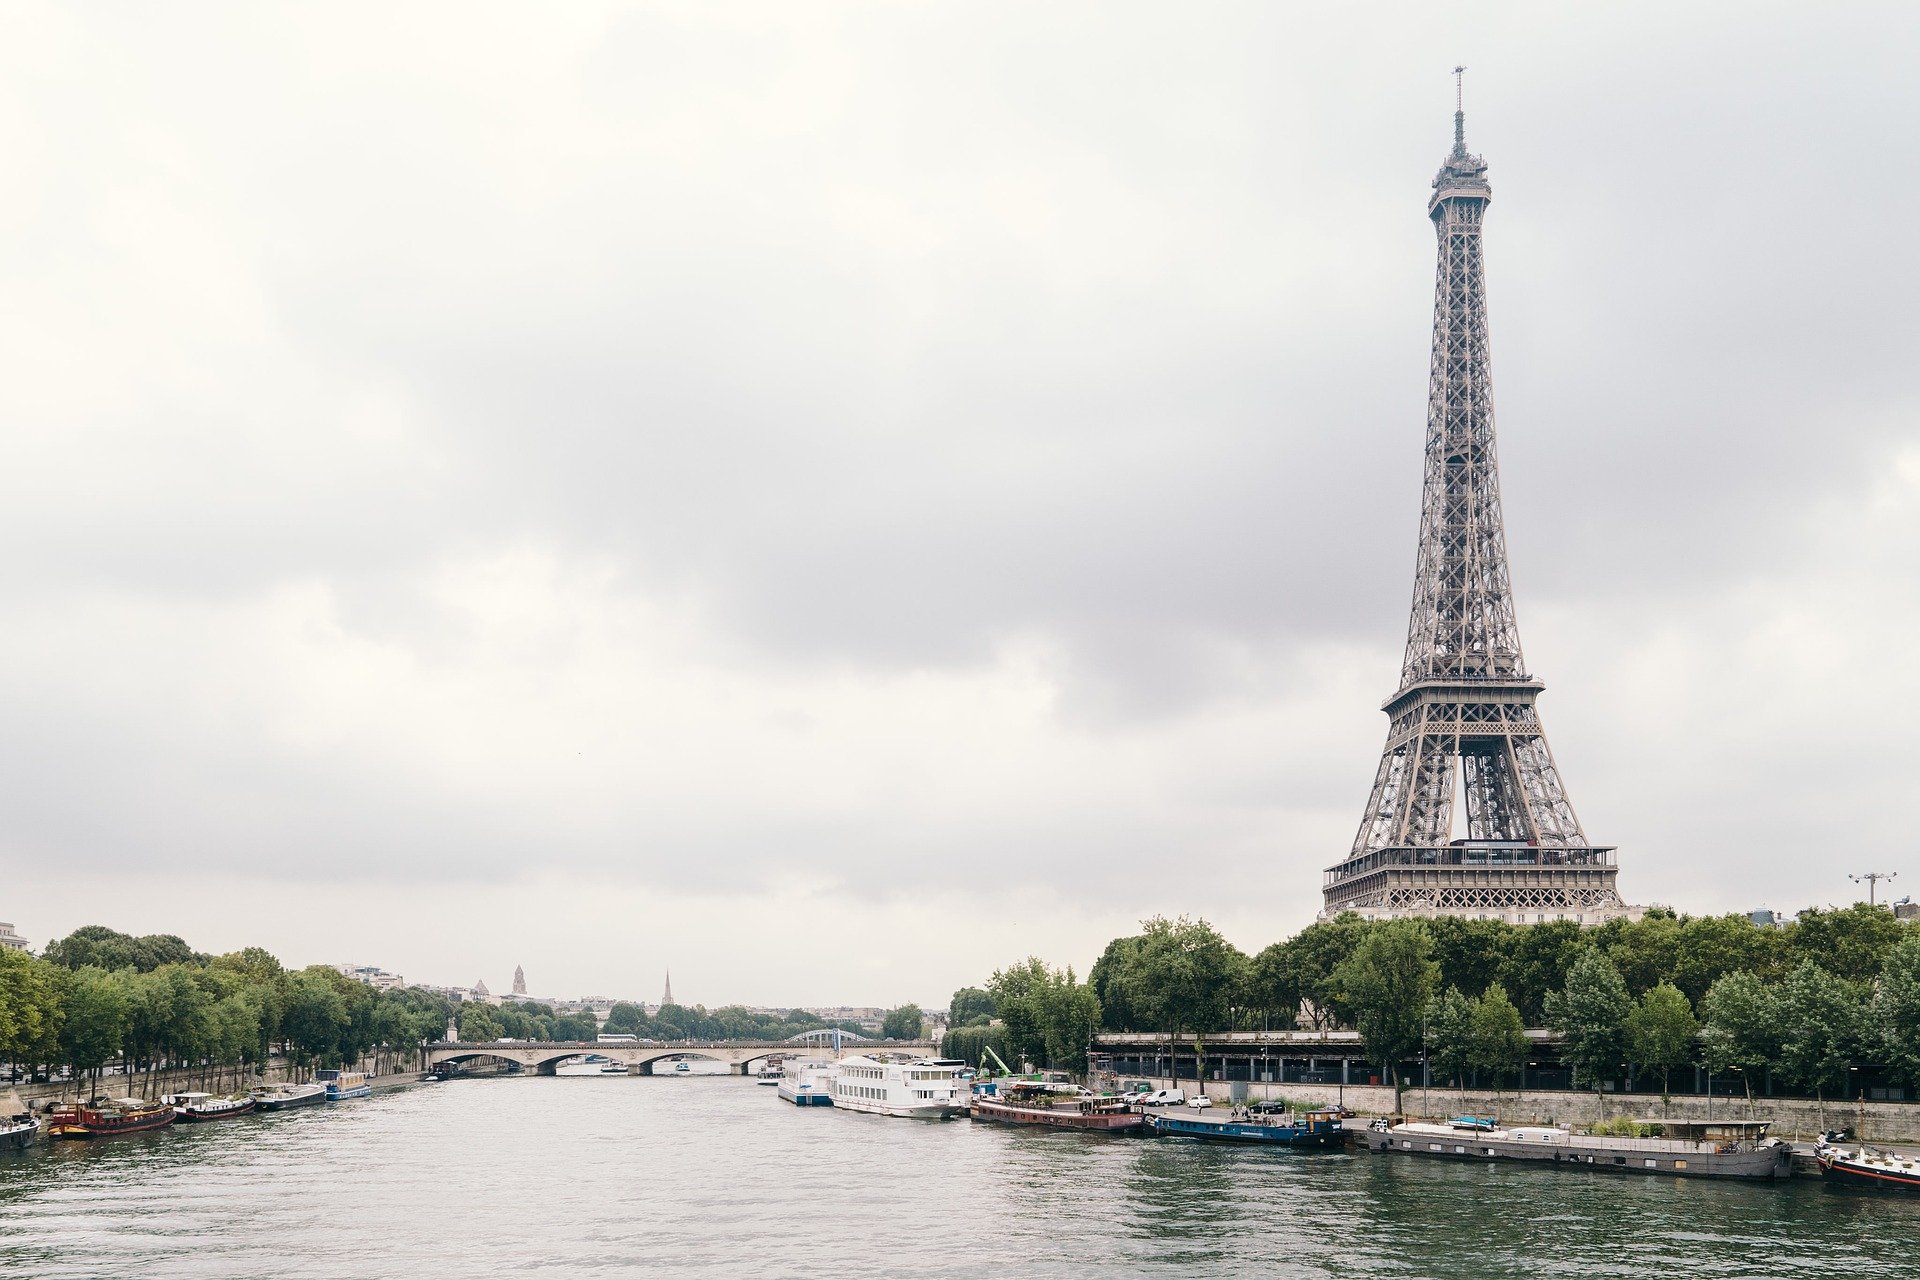 معلومات عن كل ما تحتاجه للذهاب إلى ملاهي استريكس في باريس